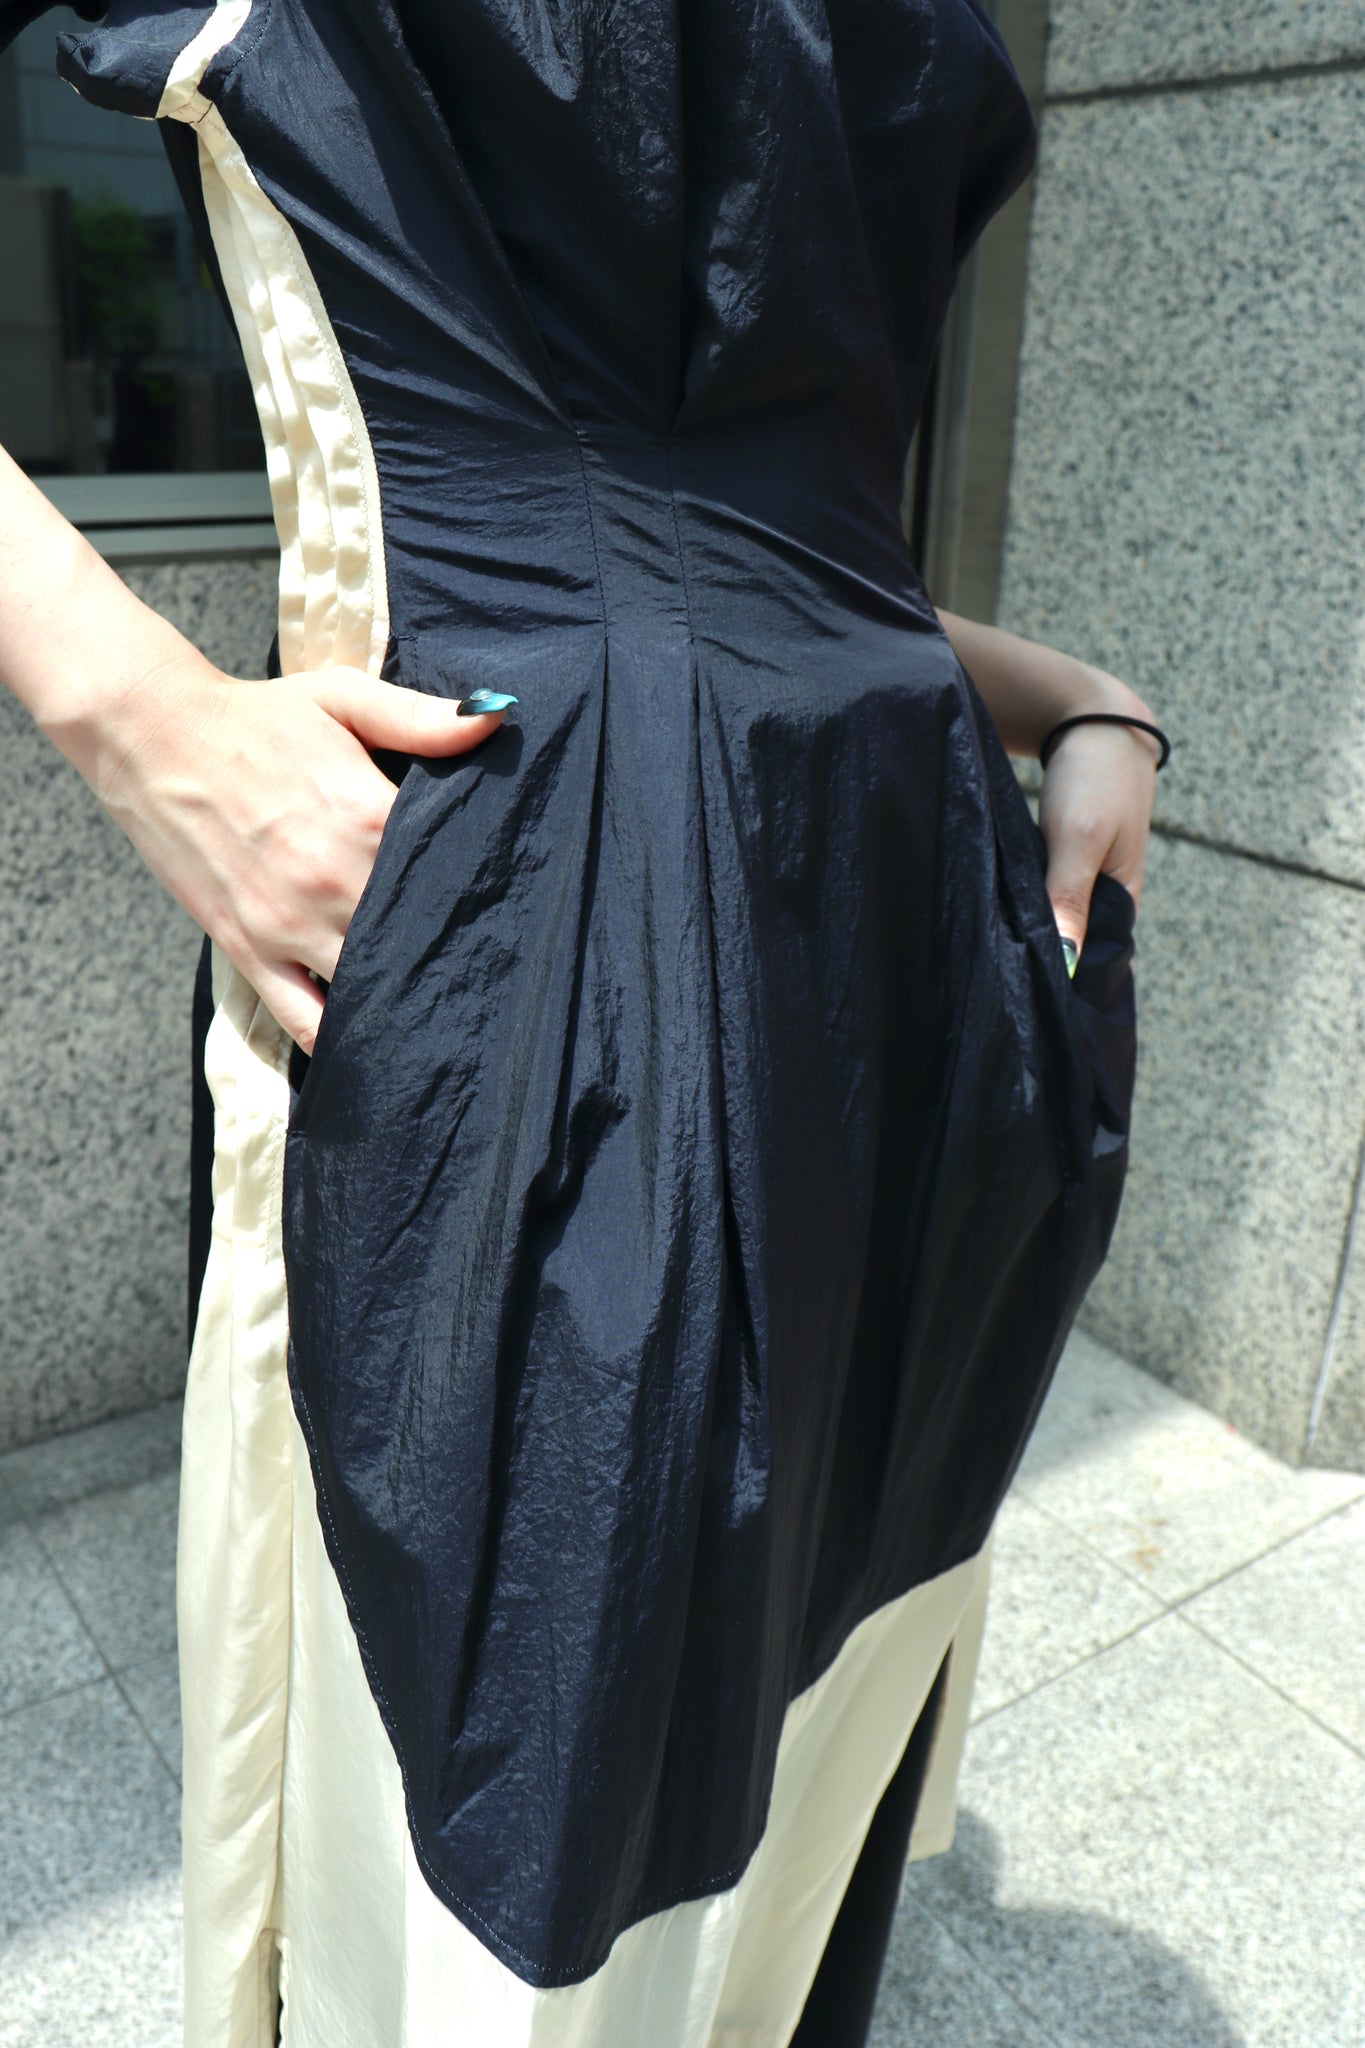 Styling image using Lenz's Docking Dress